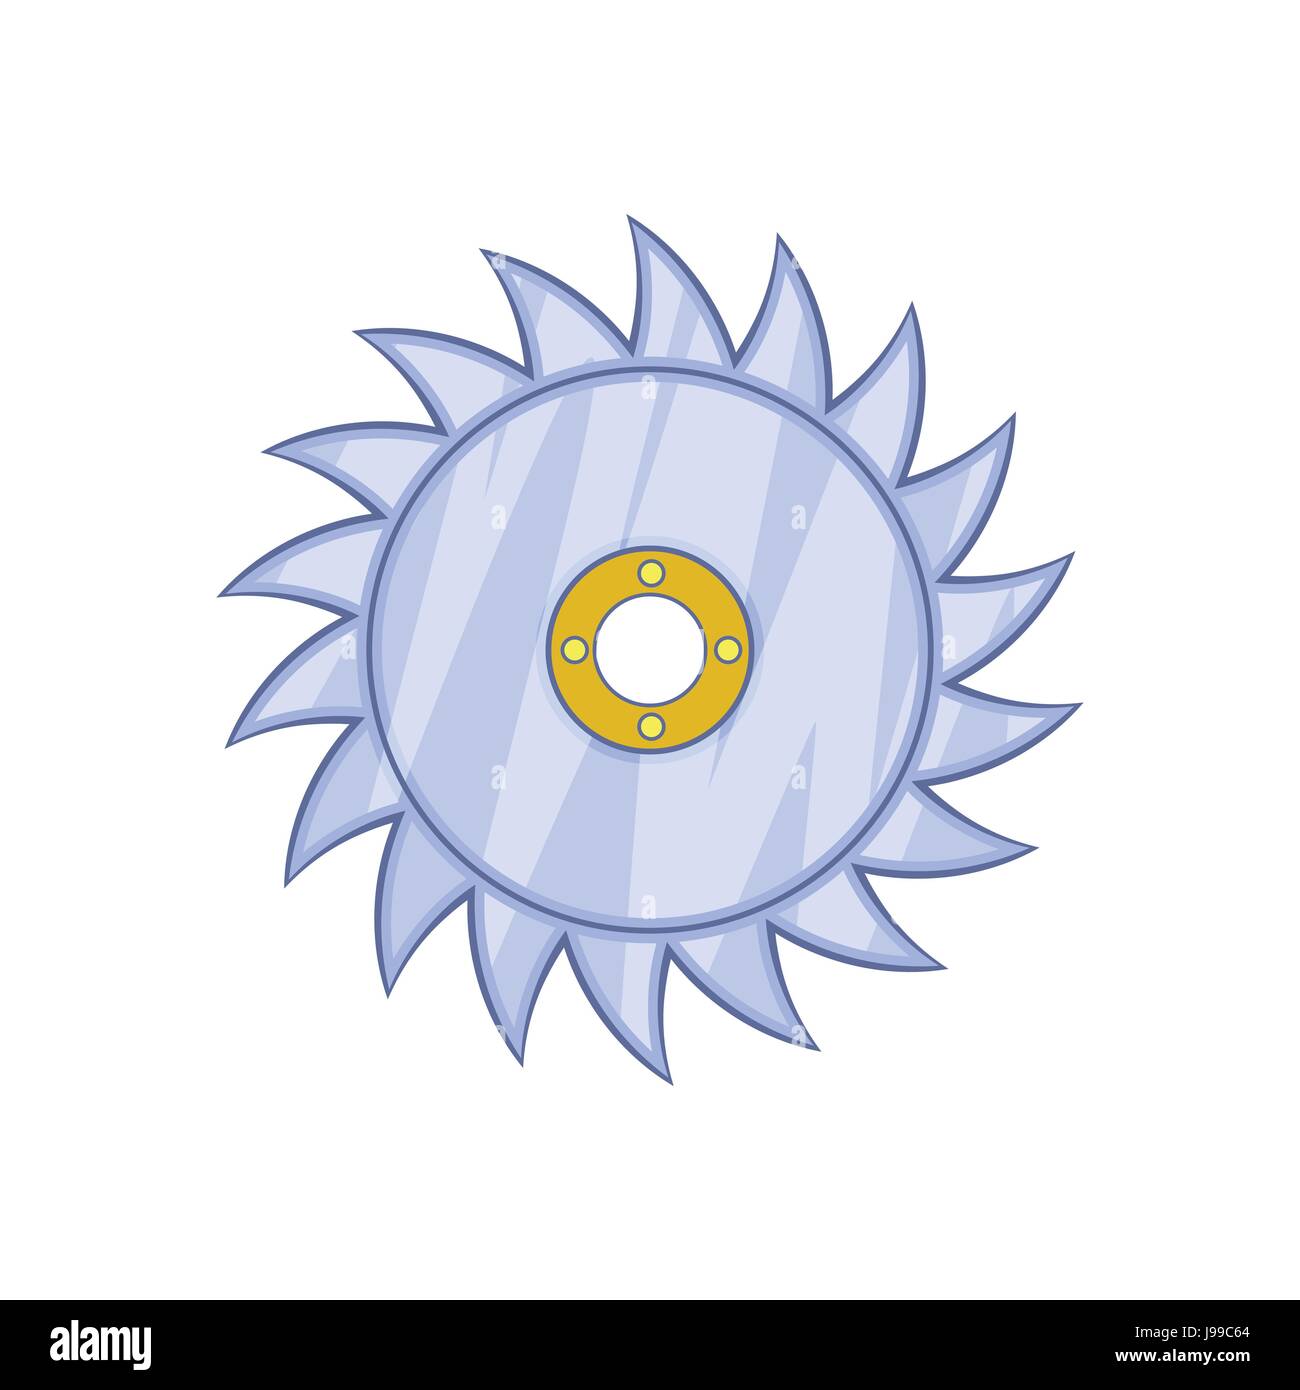 Circular saw blade icon, cartoon style Stock Vector